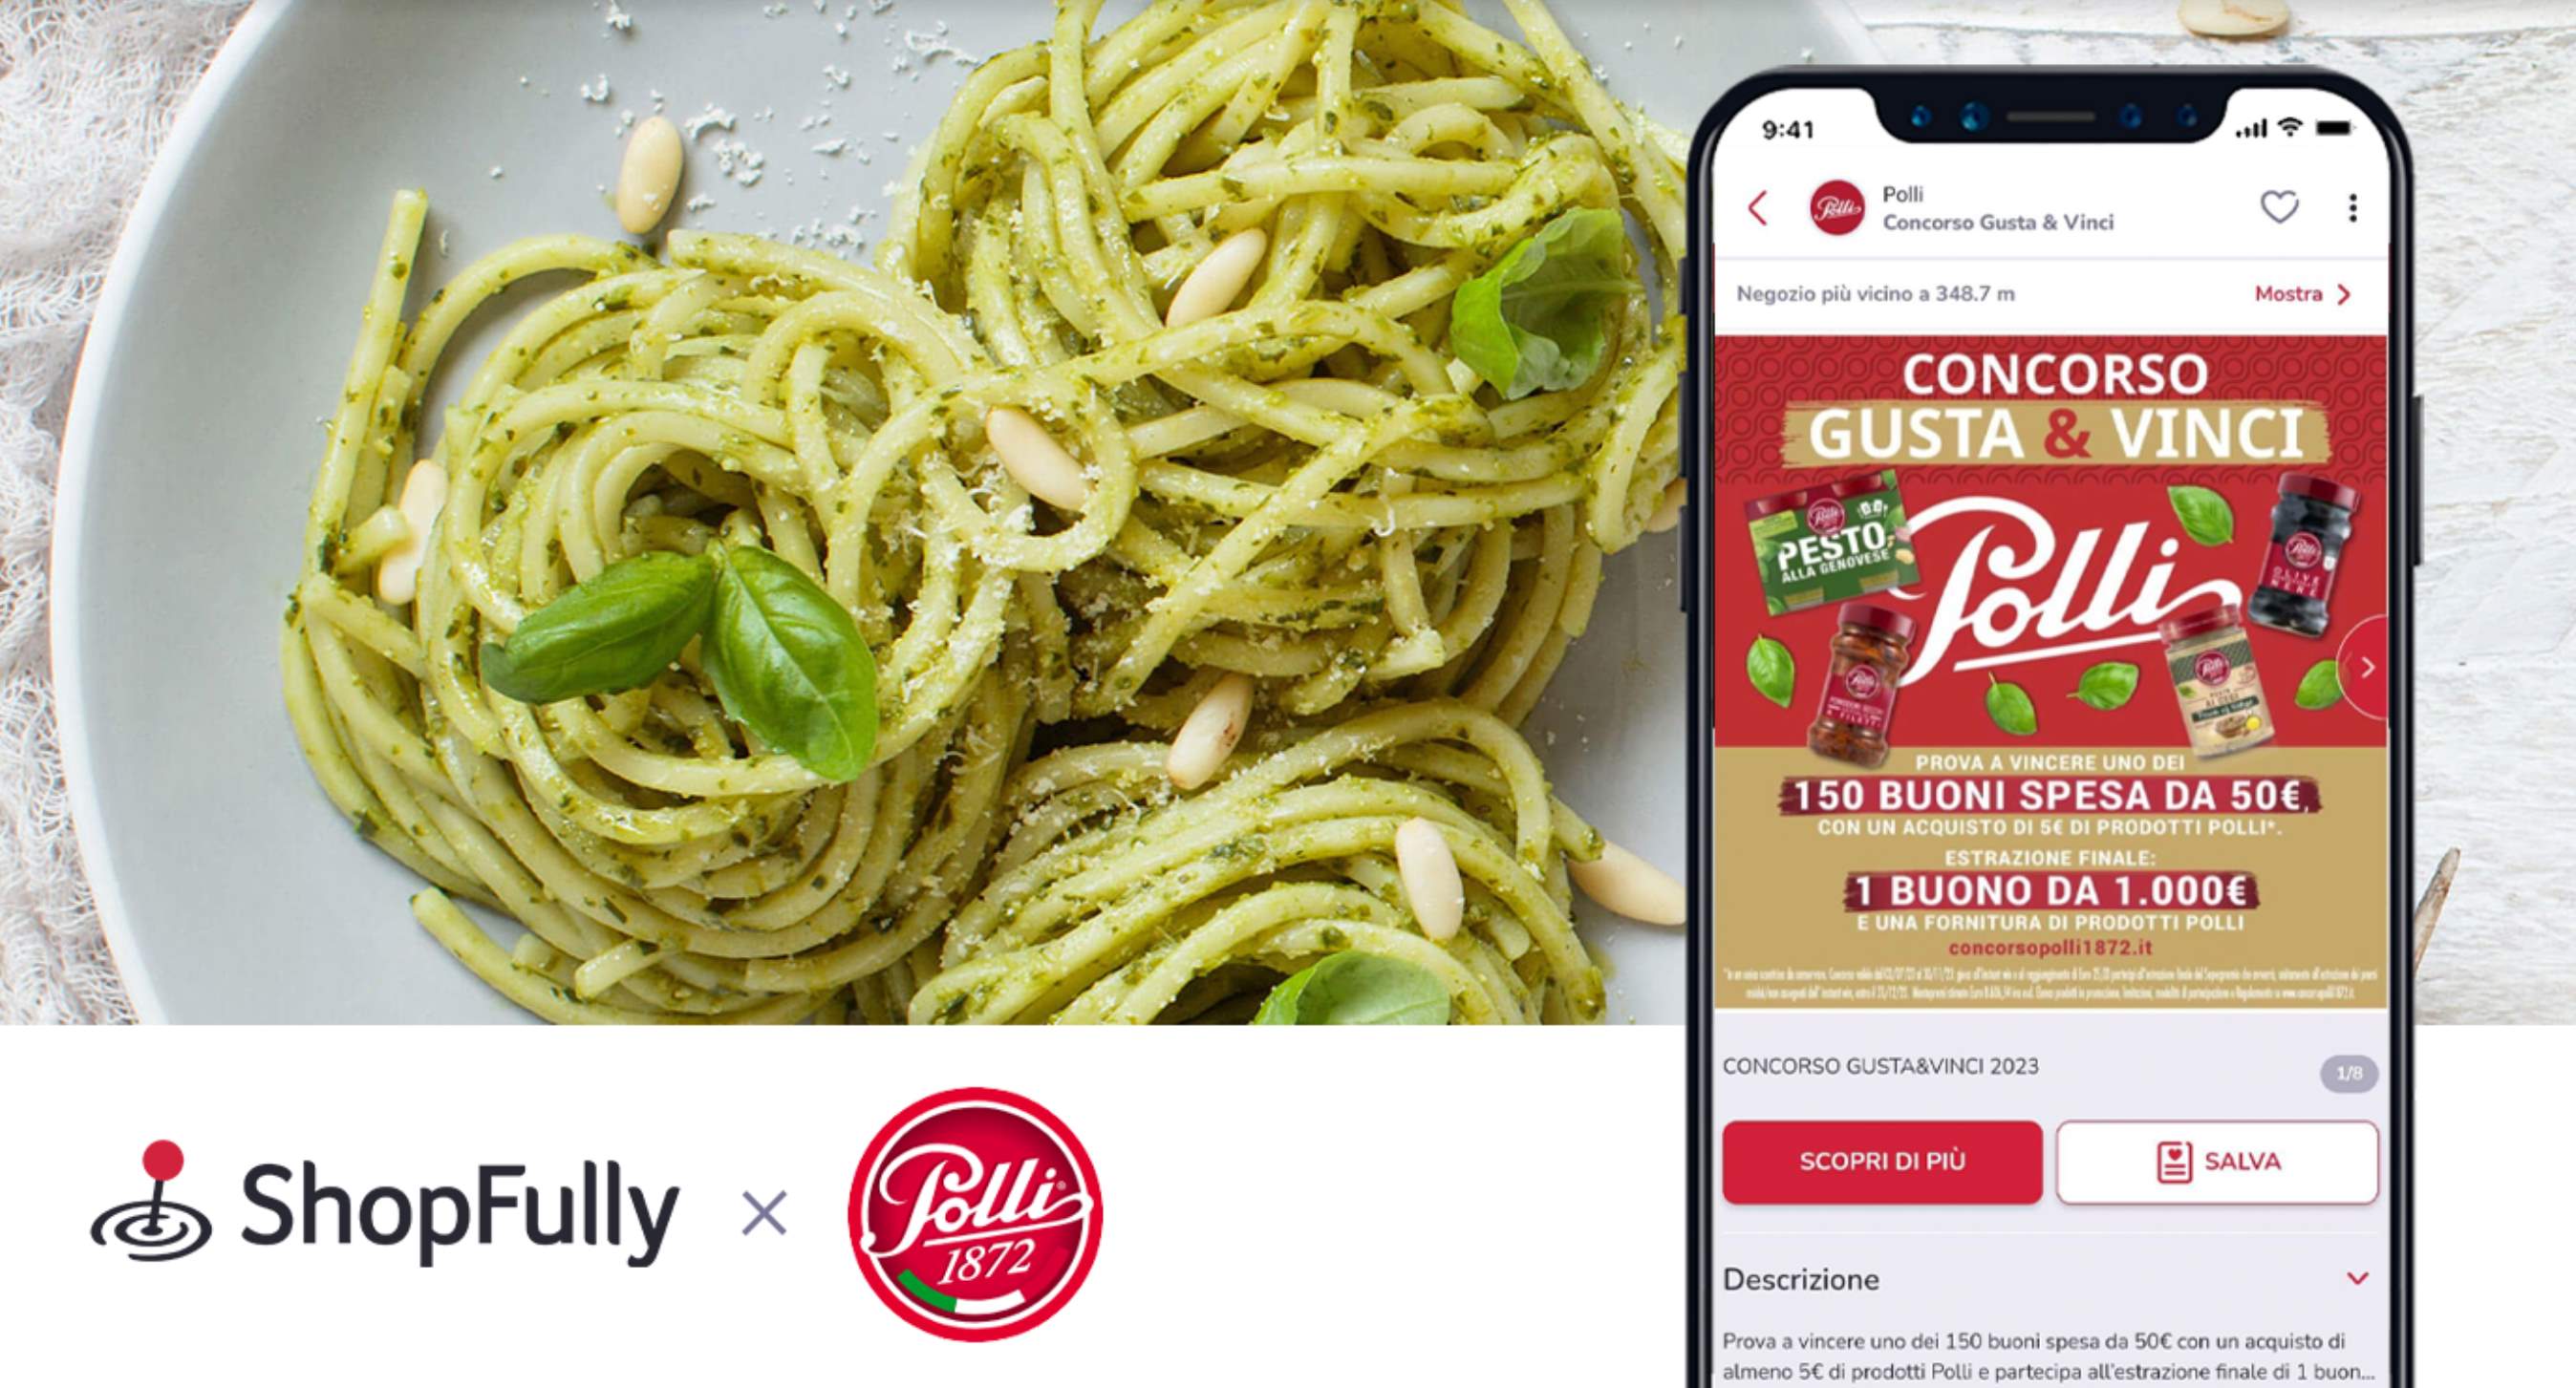 ShopFully e Polli, per incentivare le vendite del Pesto Polli